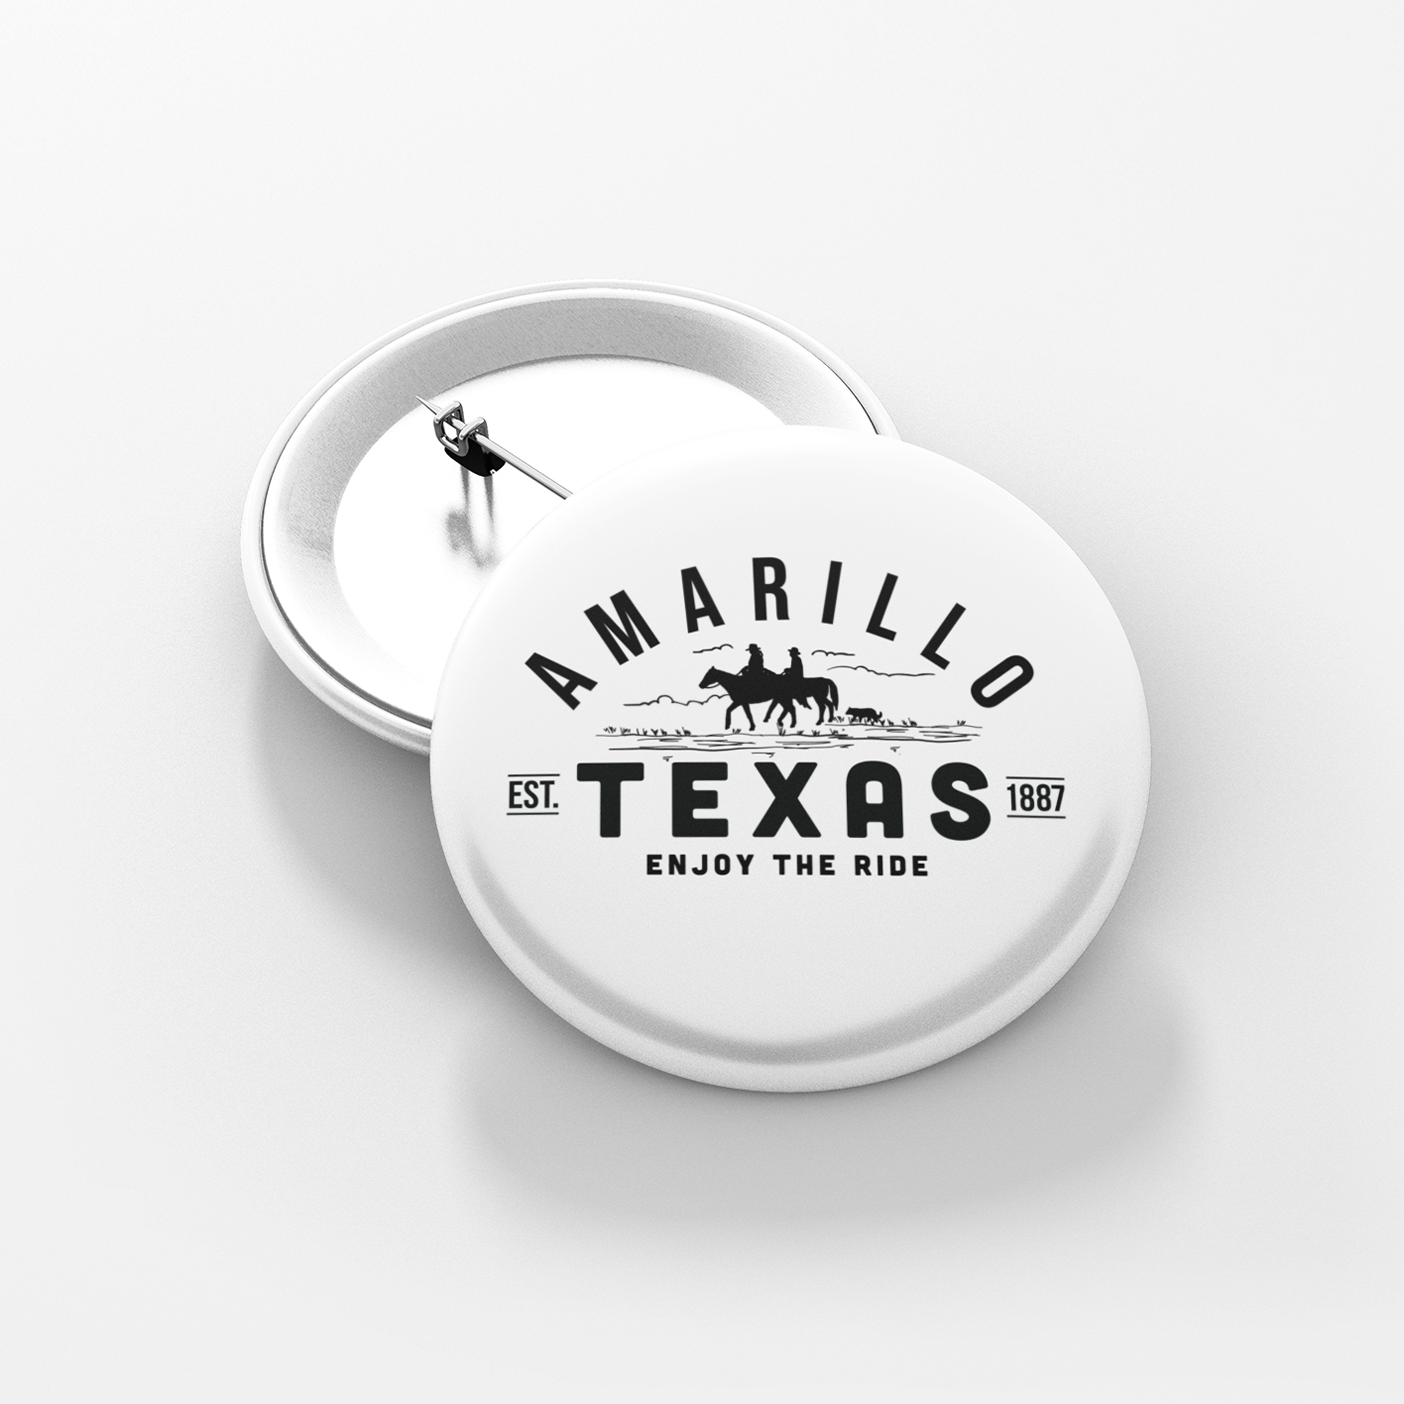 Amarillo Texas Button - Enjoy the Ride